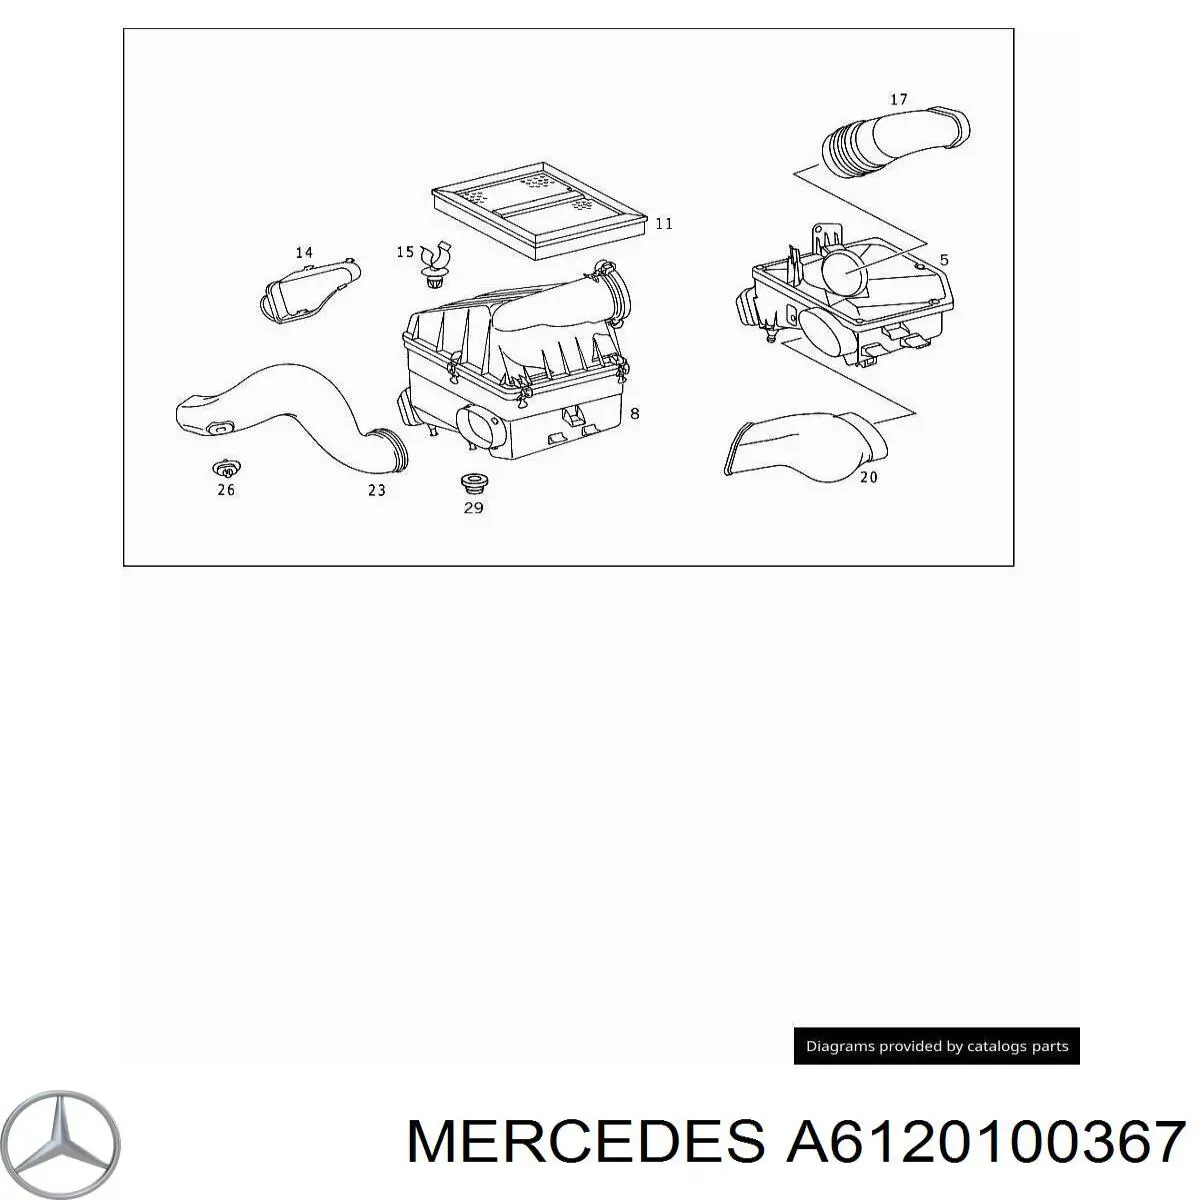 A6120100367 Mercedes cubierta de motor decorativa